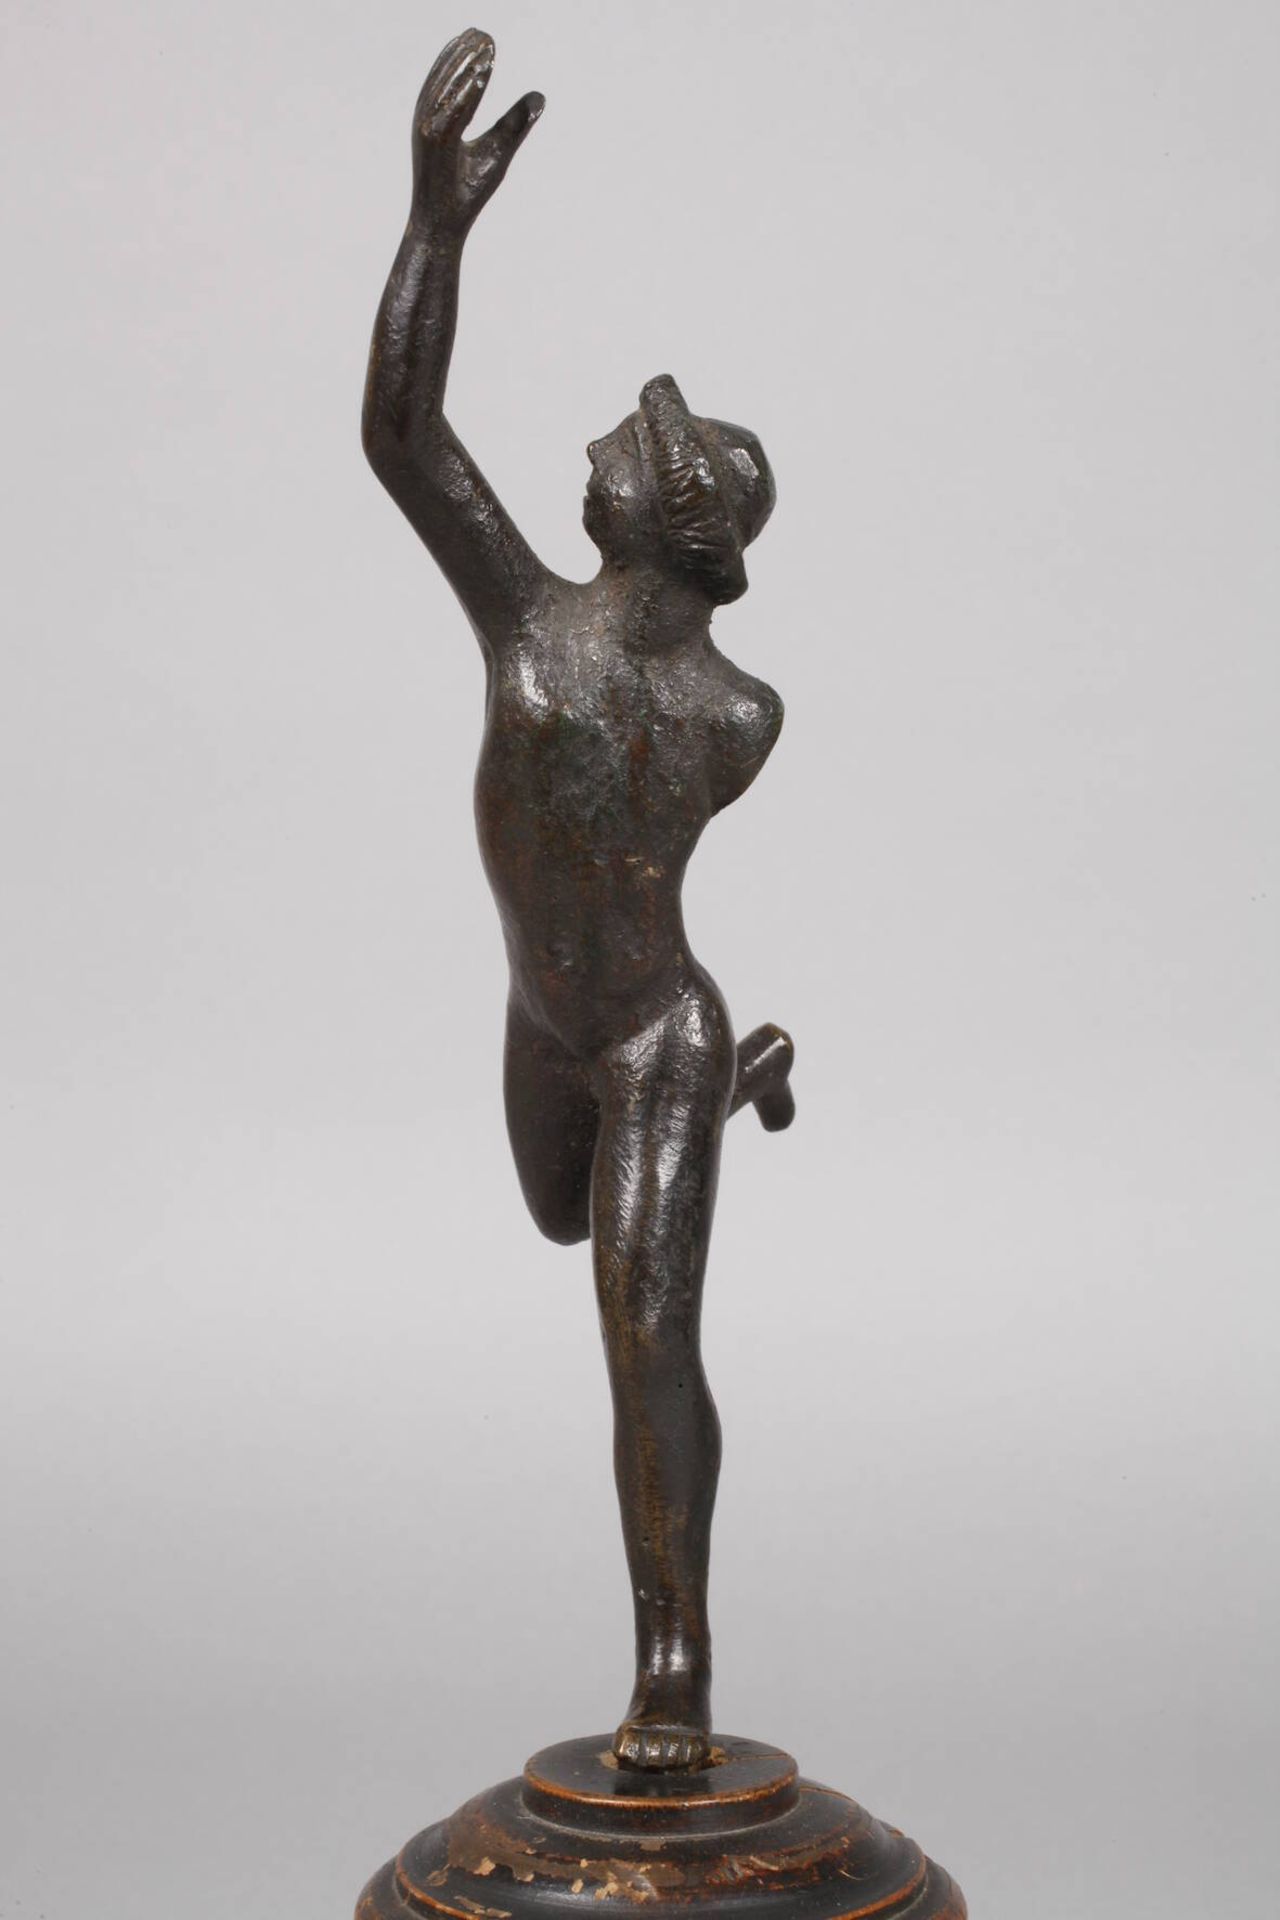 Hermes 17./18. Jh.unsigniert, Bronze dunkel patiniert, laufender Hermes als Akt, ein Arm fehlt - Bild 3 aus 6